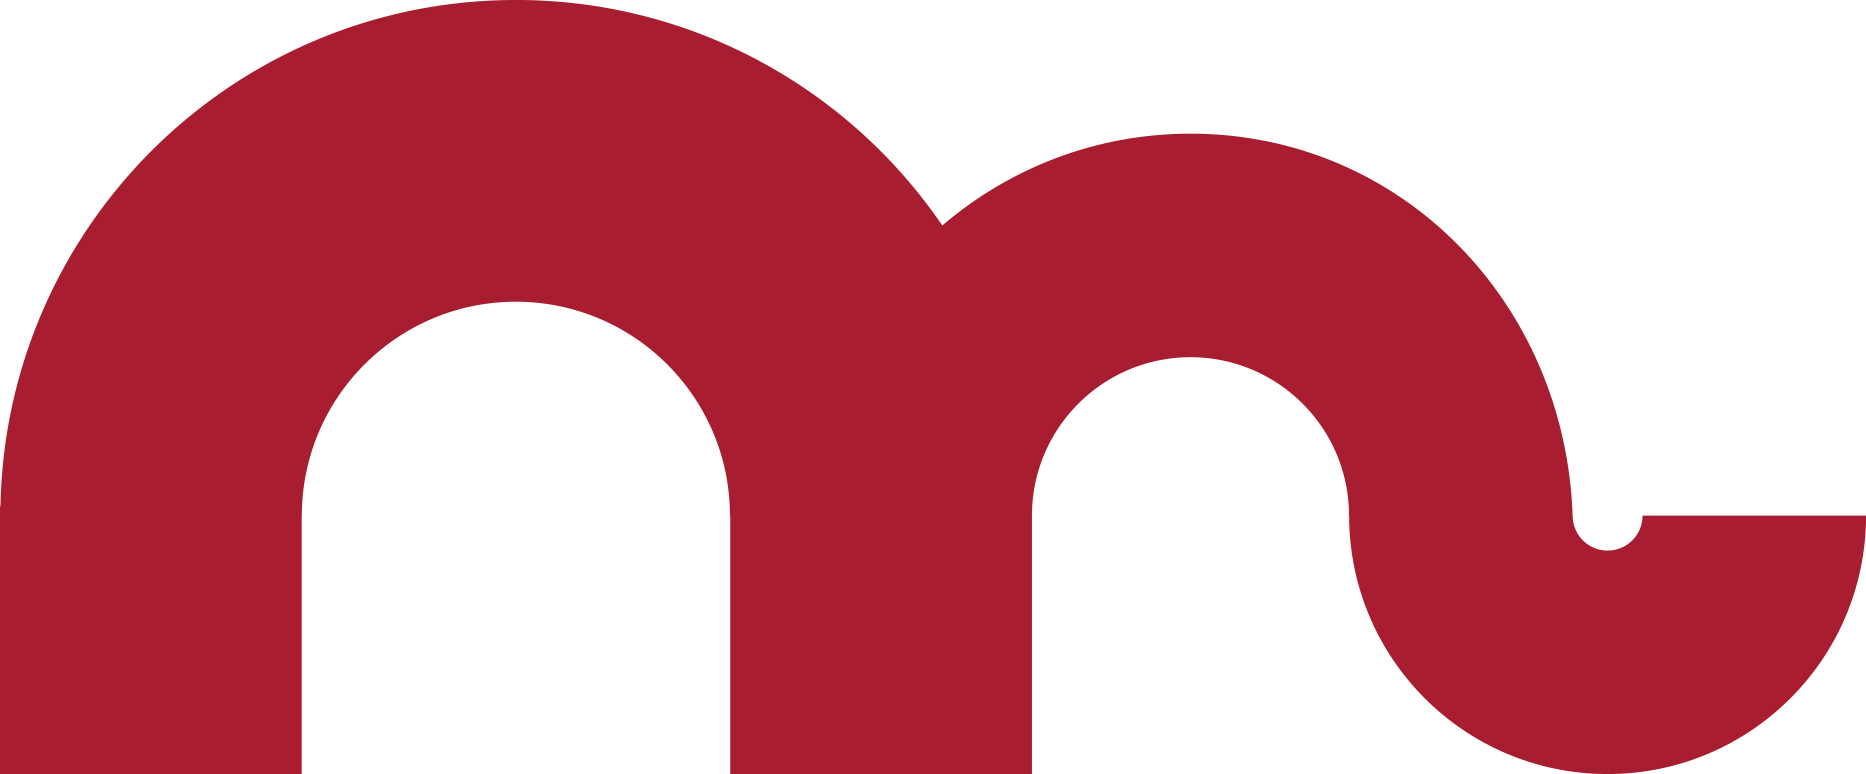 Museum logo final 1